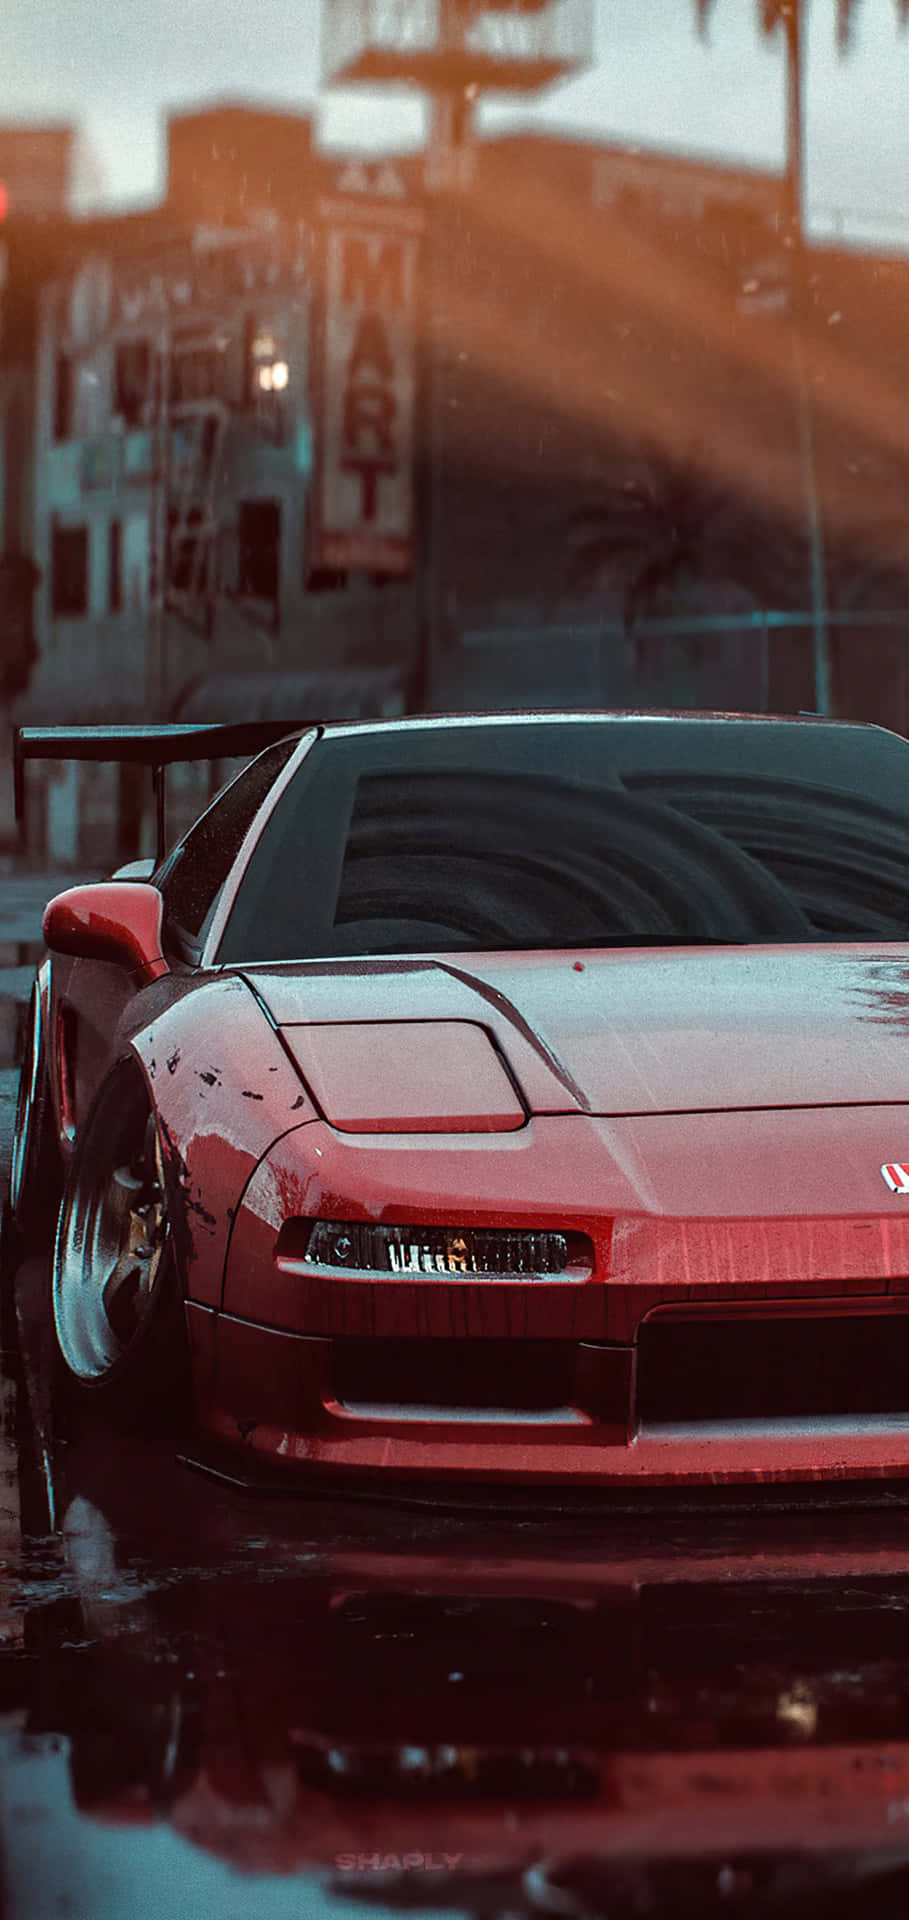 Fondode Pantalla De Pixel 3 Need For Speed Con El Ferrari Rojo.